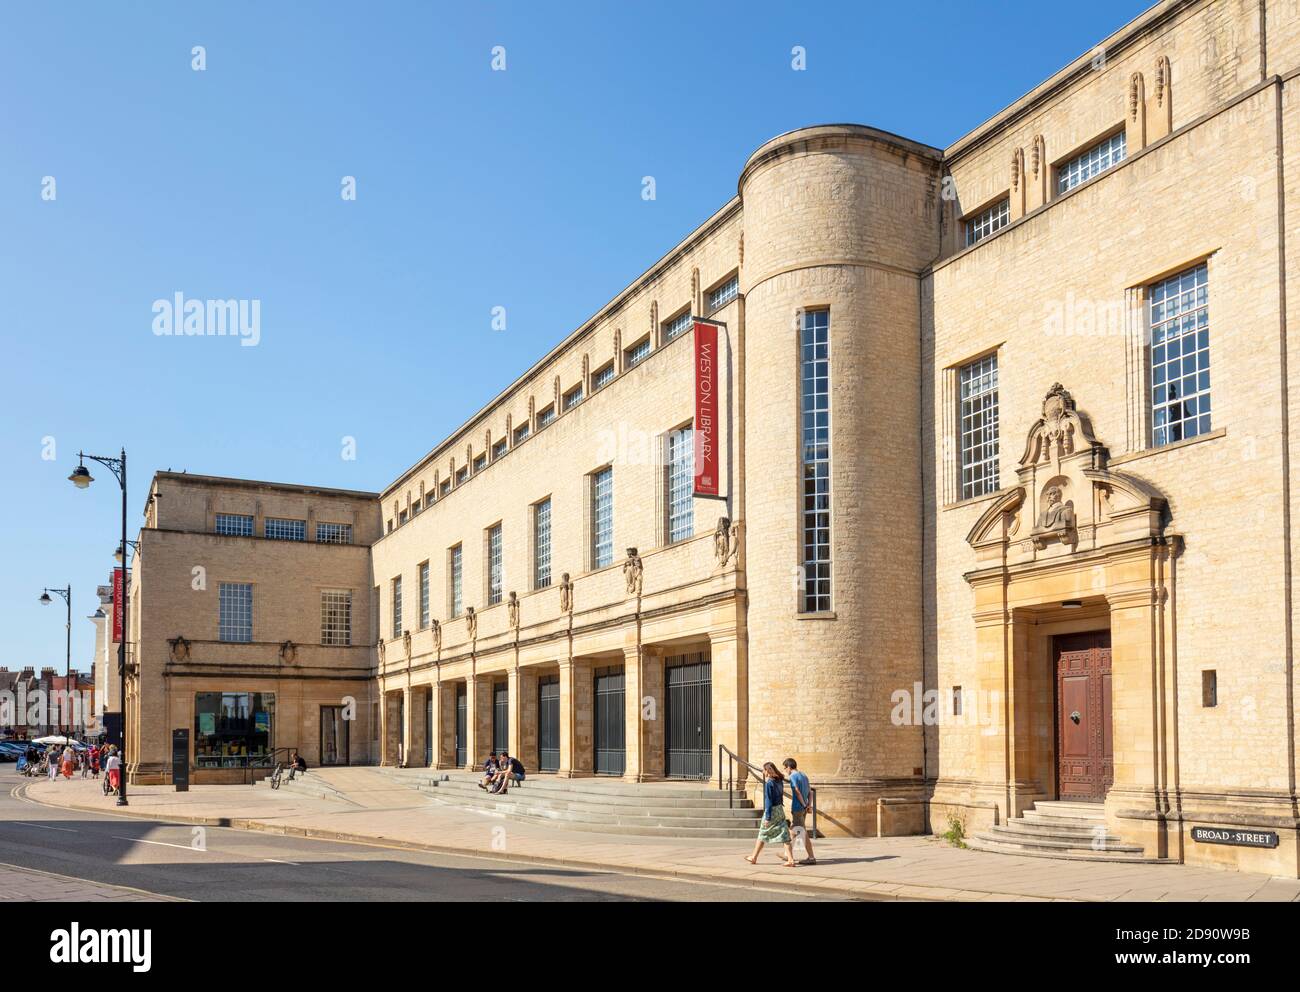 The Weston Library fait partie de la Bodleian Library, la principale bibliothèque de recherche de l'Université d'Oxford, Oxford Oxfordshire Angleterre GB Europe Banque D'Images